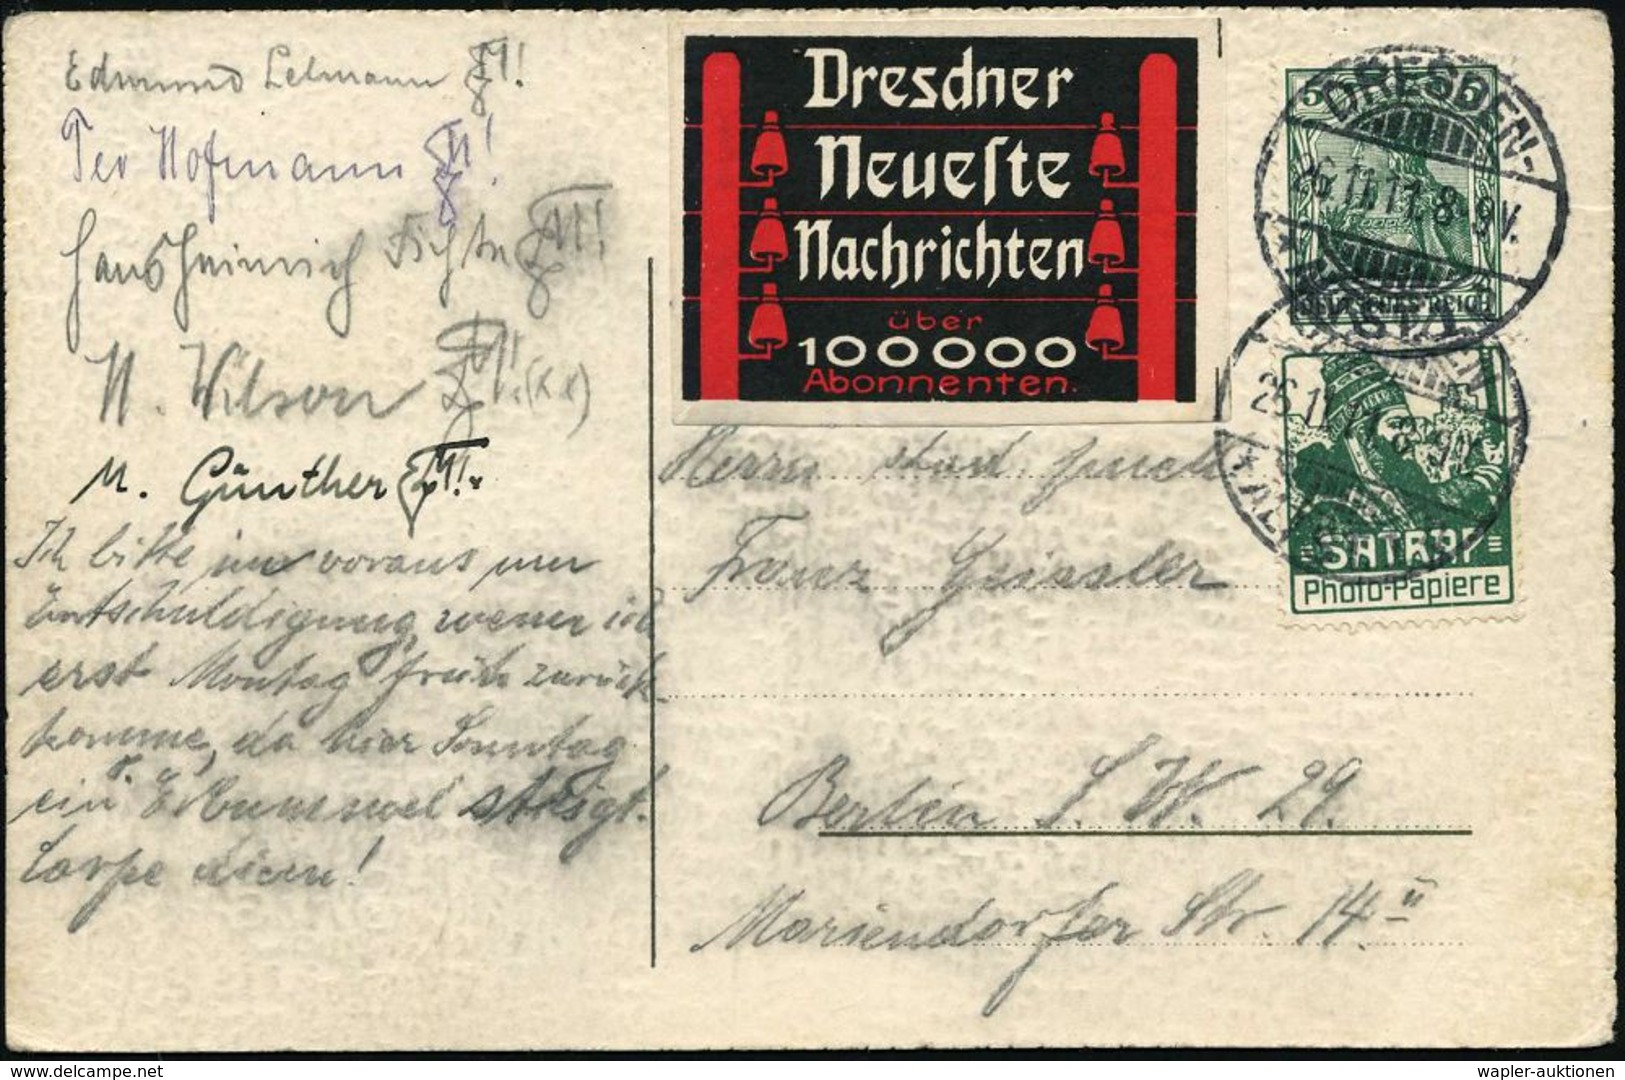 Dresden-Altst. 1 1911 (26.11.) 5 Pf. Germania U. Reklame-Zierfeld "SATRAP"- Foto-Papiere, Gr. Kopf (lose Darunter, Zusam - Egyptologie